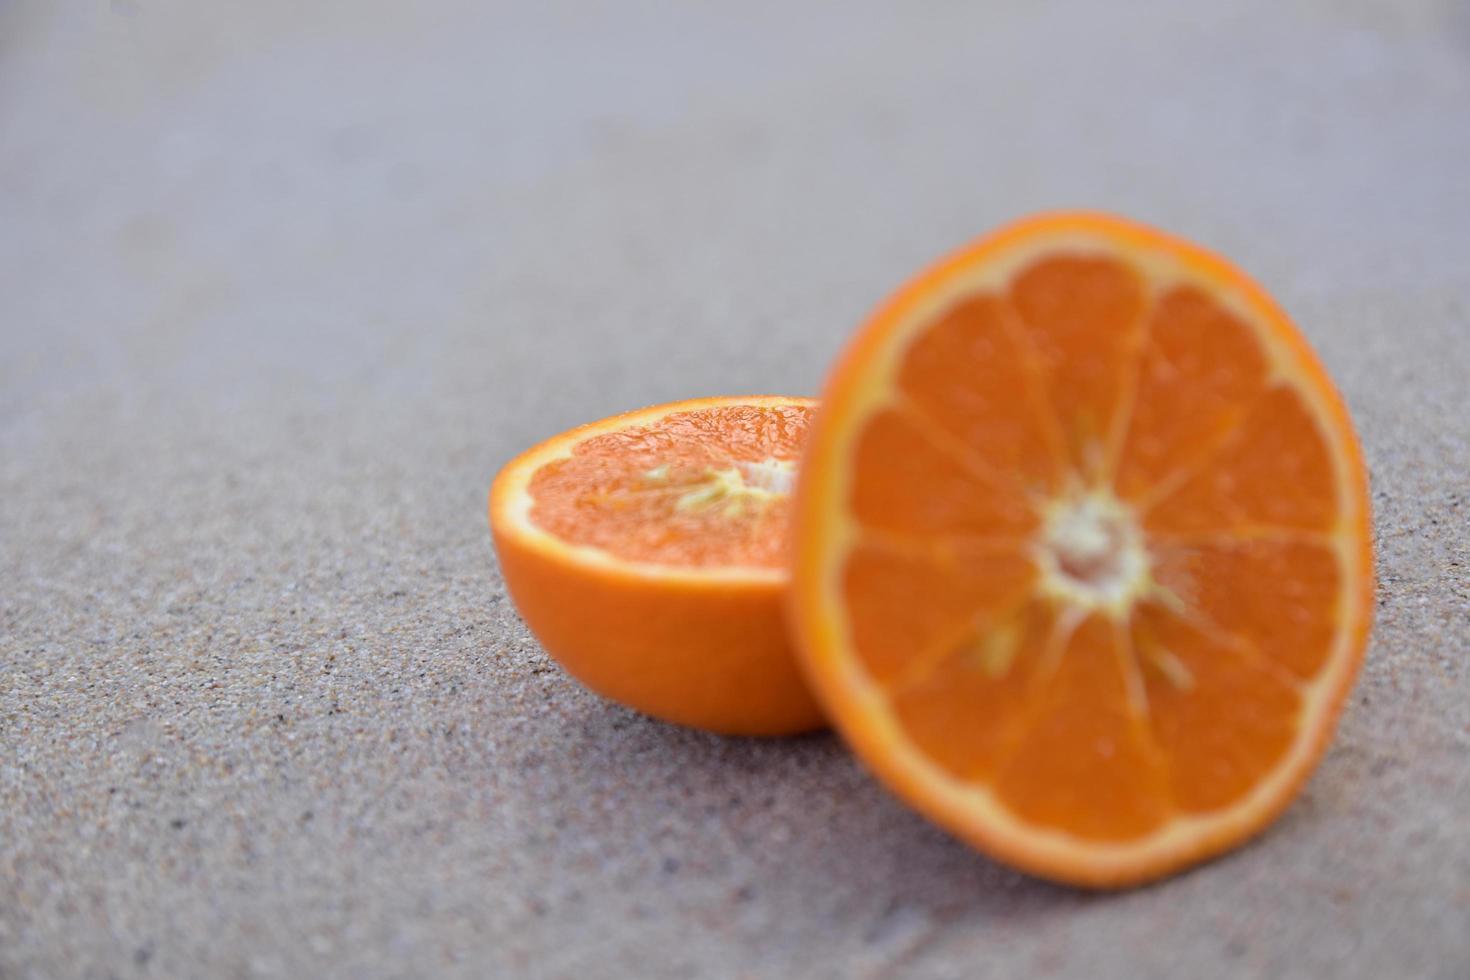 orange est sur fond de vue sur la mer plage, concept de vacances d'été photo